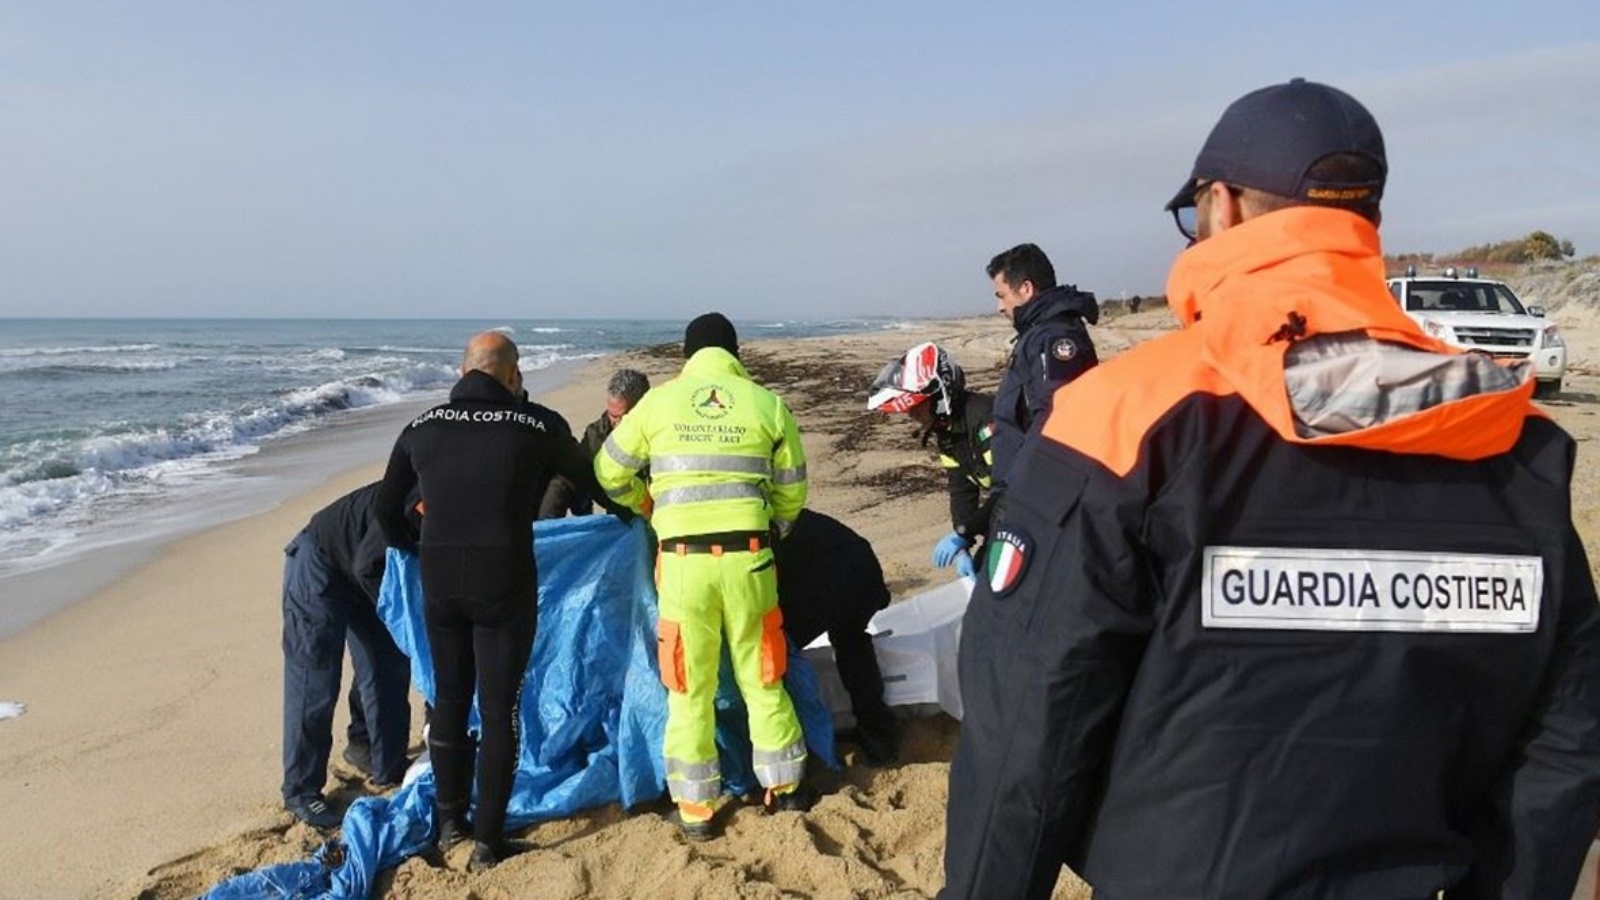 رجال الإنقاذ يقومون بتغطية جثة جرفتها الأمواج على الشاطئ بعد يومين من غرق قارب للمهاجرين قبالة منطقة كالابريا الجنوبية بإيطاليا